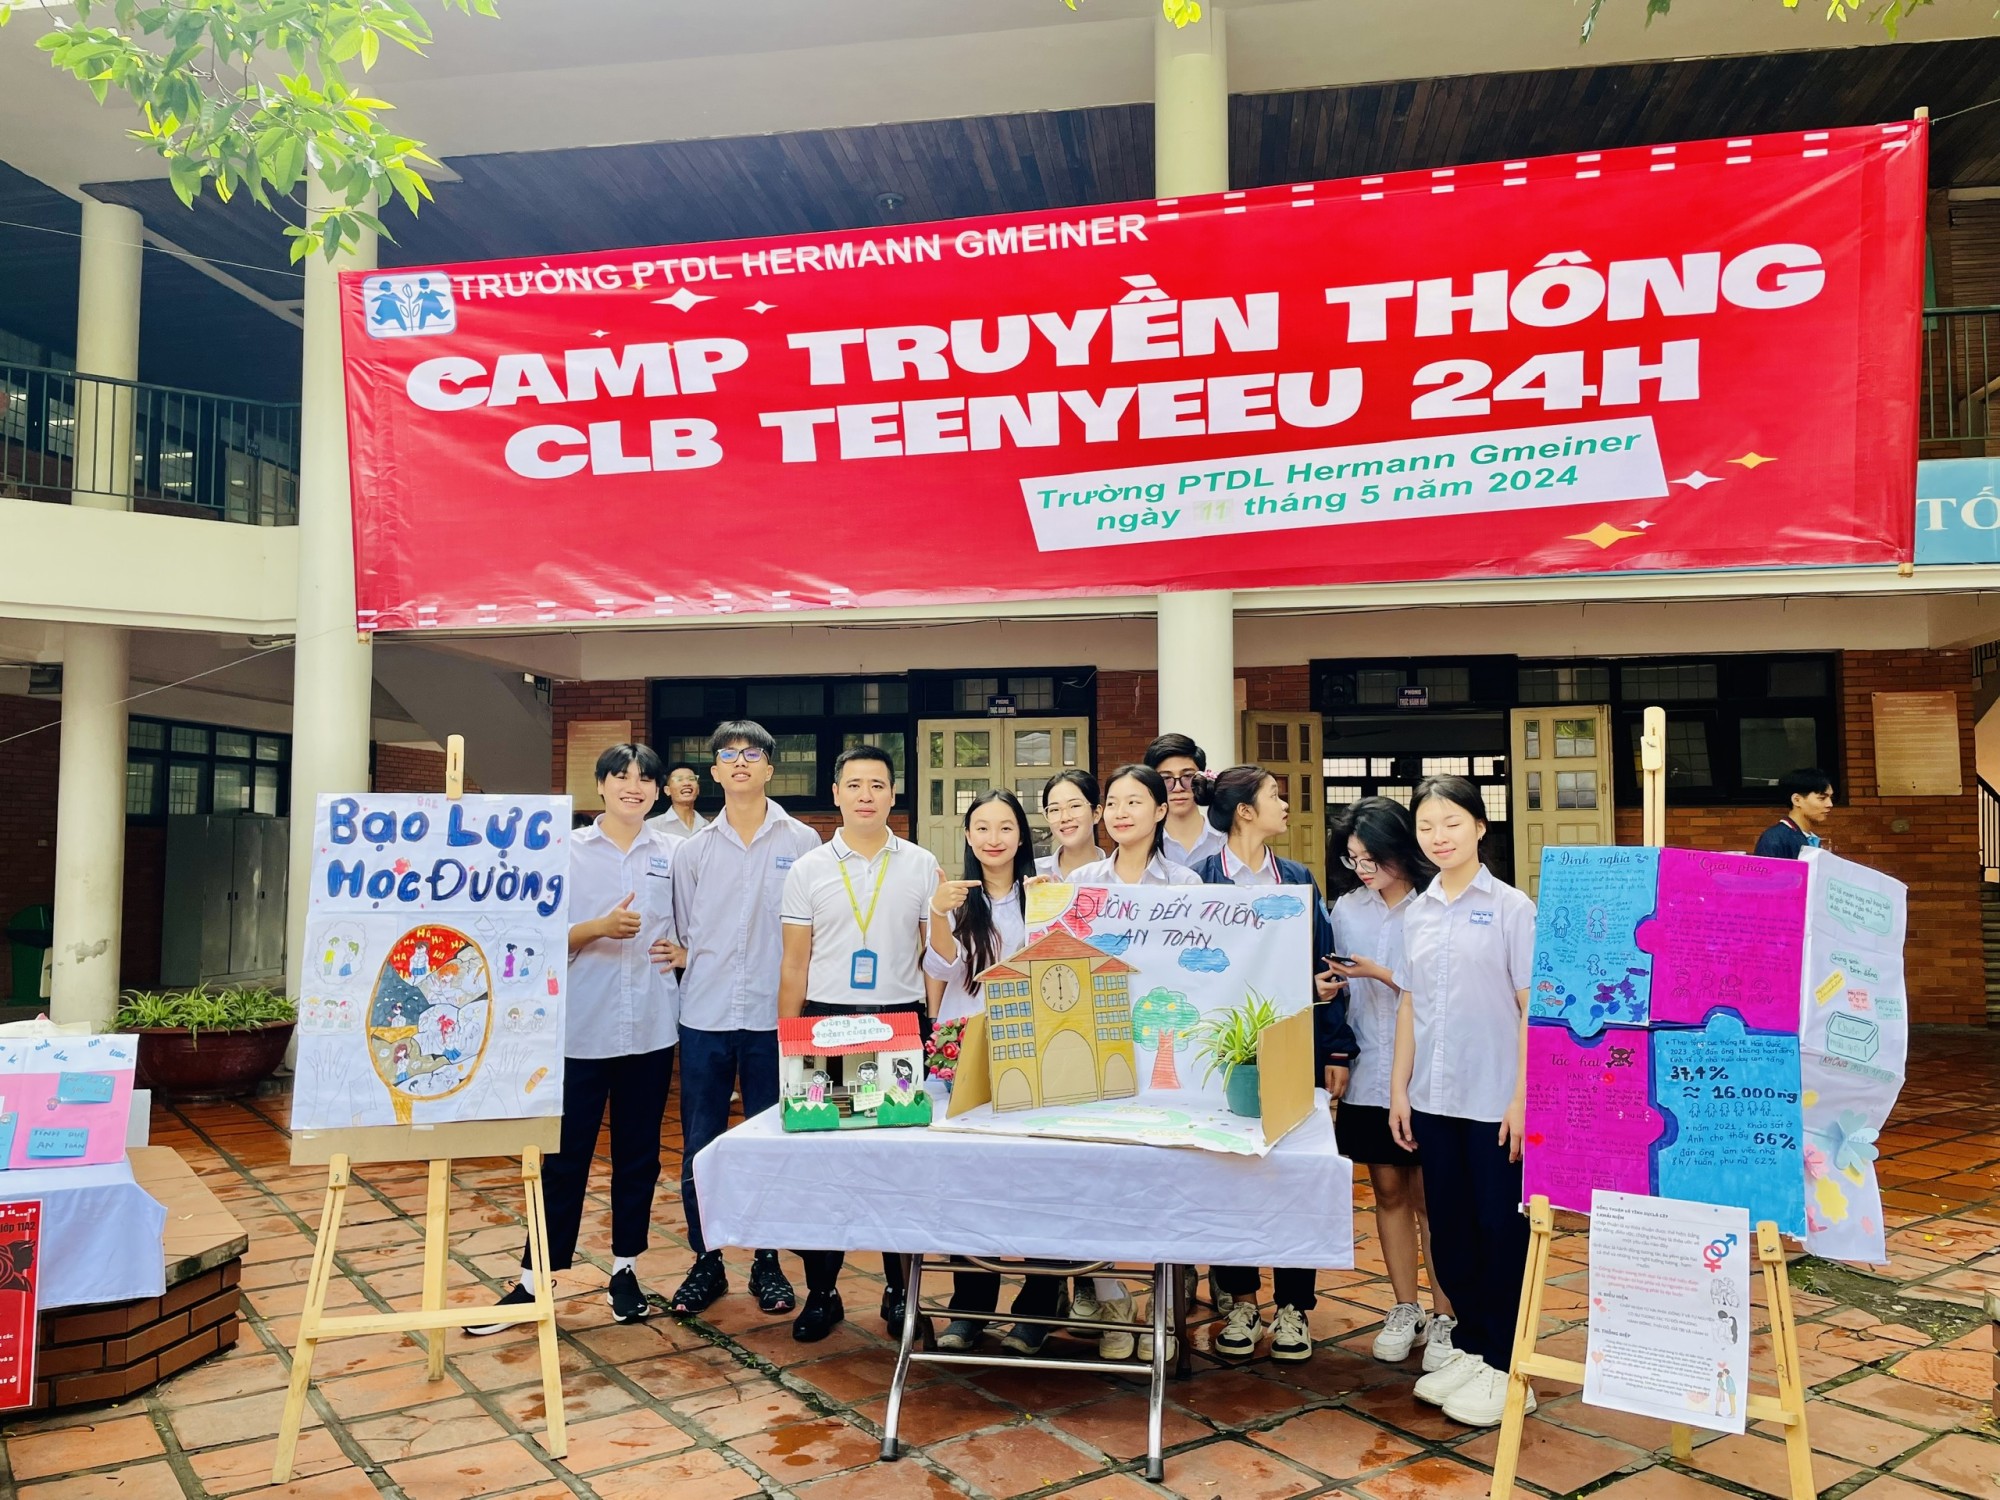 CLB TEENYEEU 24H tại Trường Hermann Gmeiner Hà Nội do Trung tâm Trẻ em và Phát triển (CCD) cùng Viện Dân số, Gia đình & trẻ em phối hợp thực hiện.  